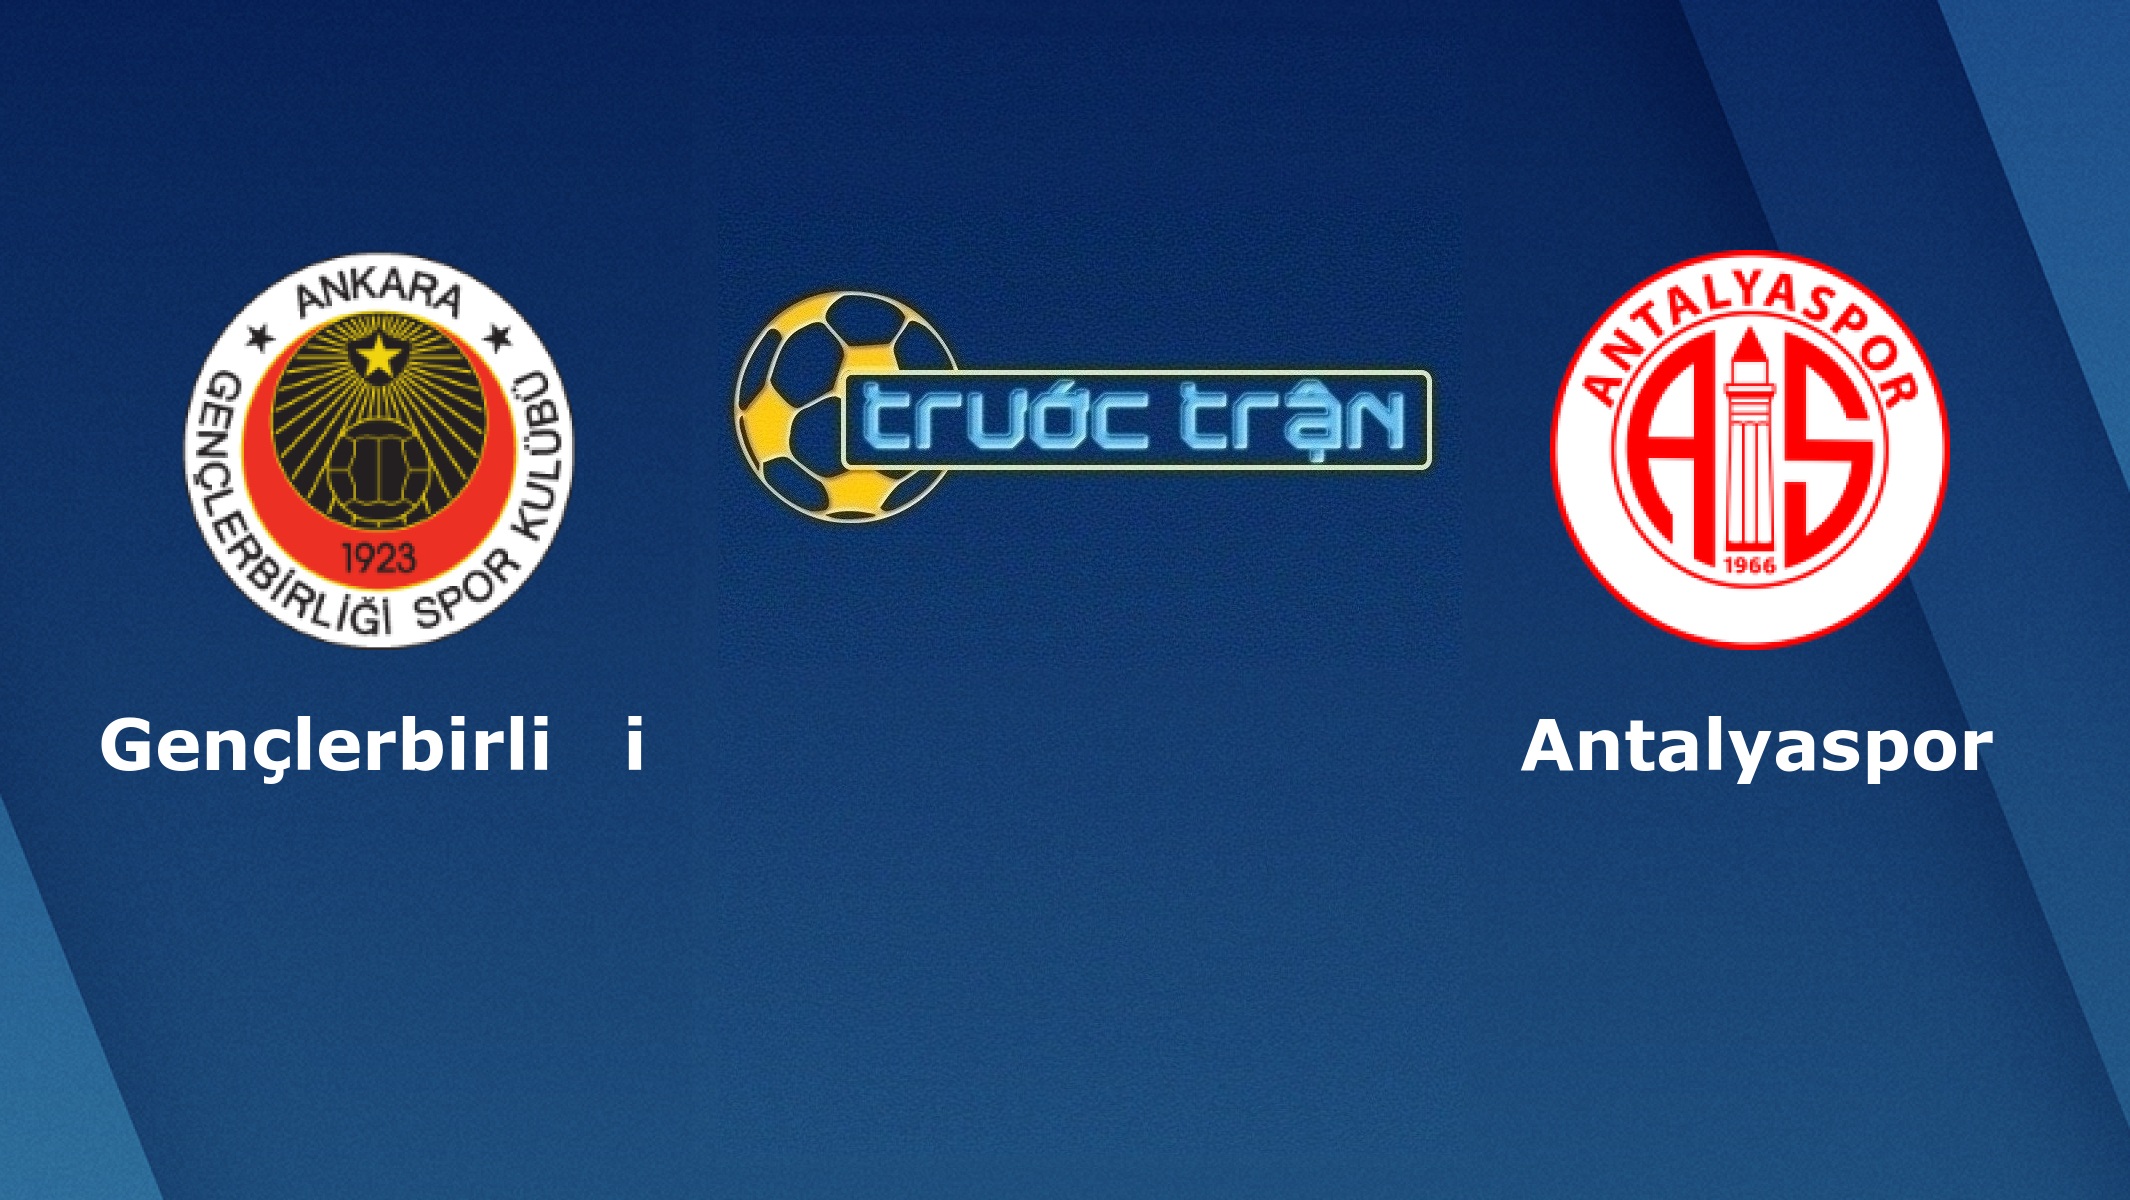 Genclerbirligi vs Antalyaspor – Tip kèo bóng đá hôm nay – 10/03